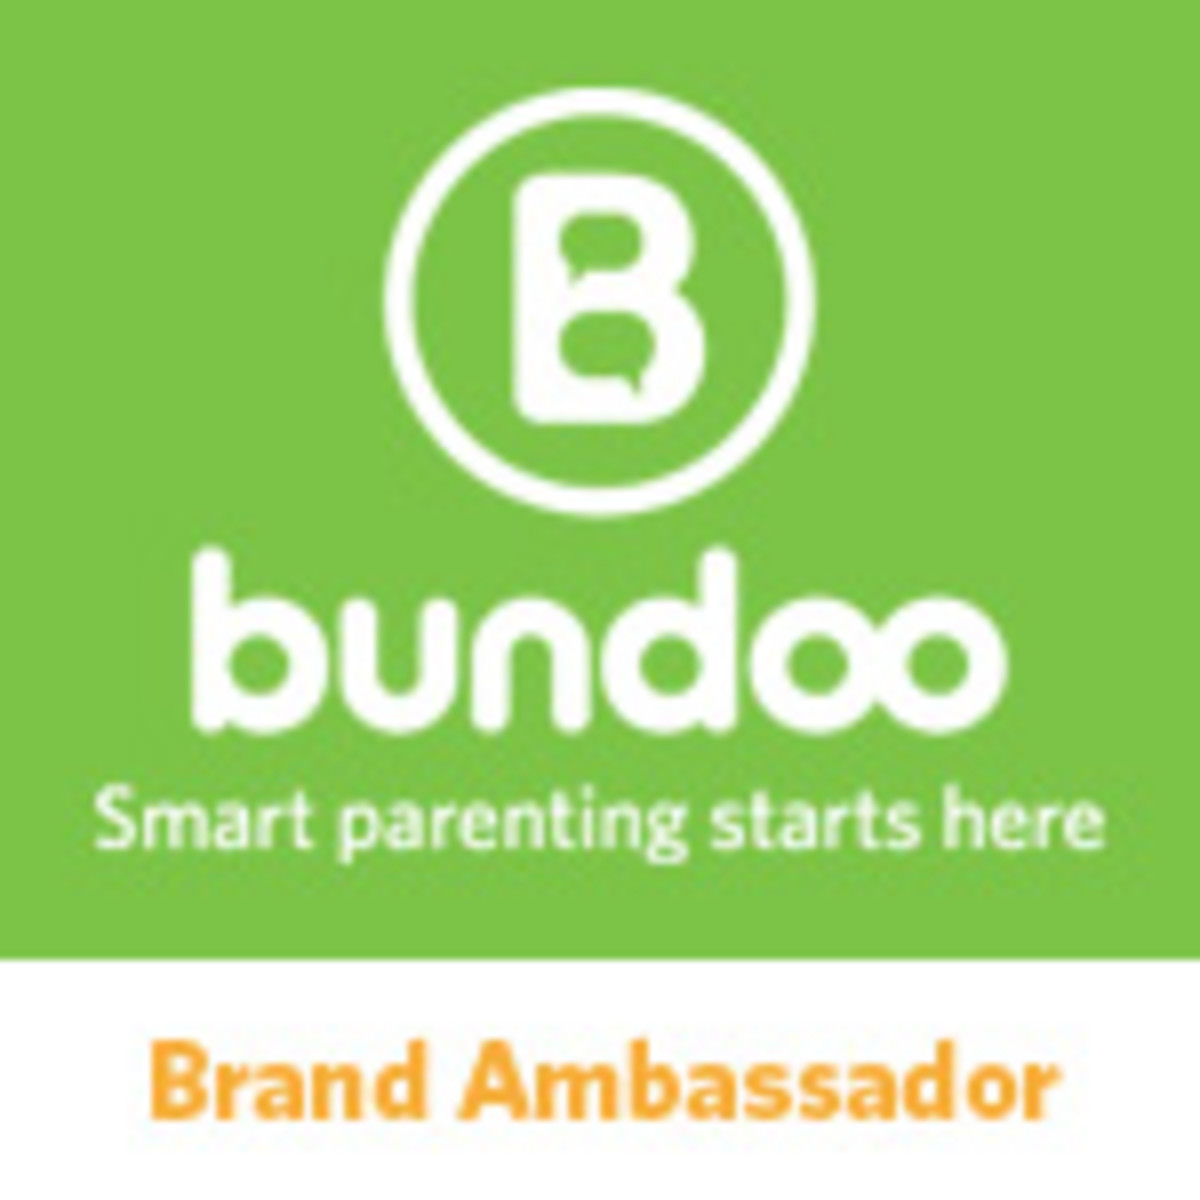 Bundoo Brand Ambassador Badge